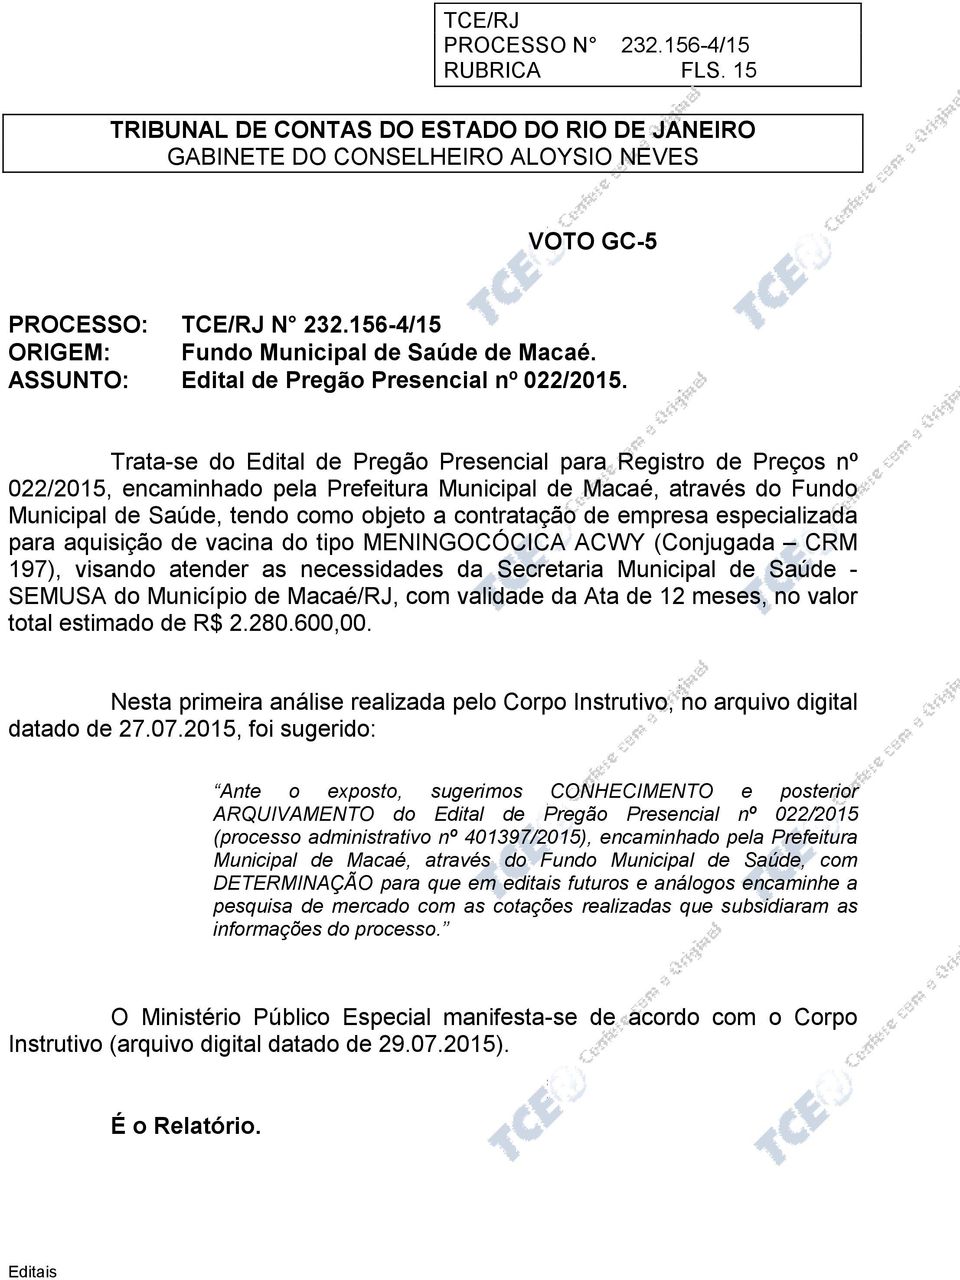 Trata-se do Edital de Pregão Presencial para Registro de Preços nº 022/2015, encaminhado pela Prefeitura Municipal de Macaé, através do Fundo Municipal de Saúde, tendo como objeto a contratação de